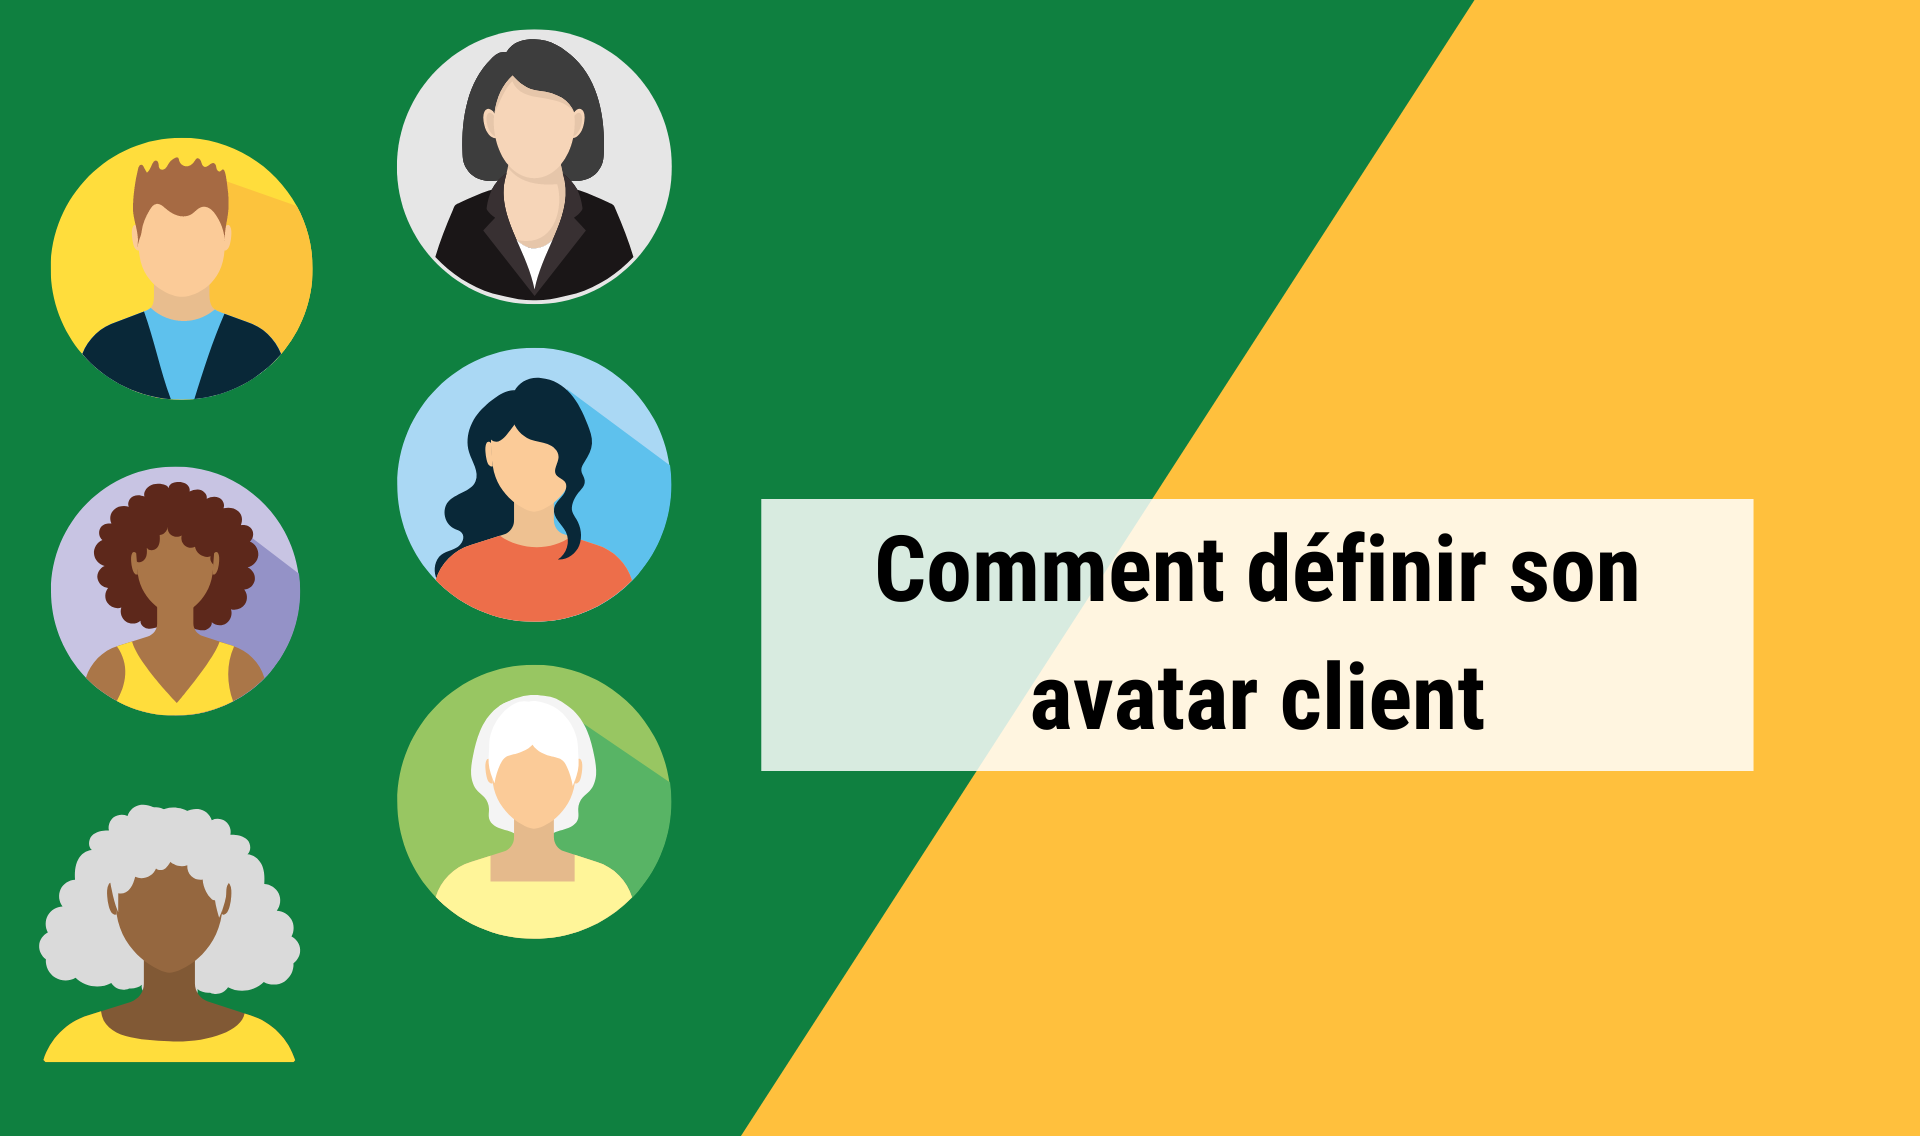 Comment définir votre avatar client pour mieux répondre à leurs besoins ?